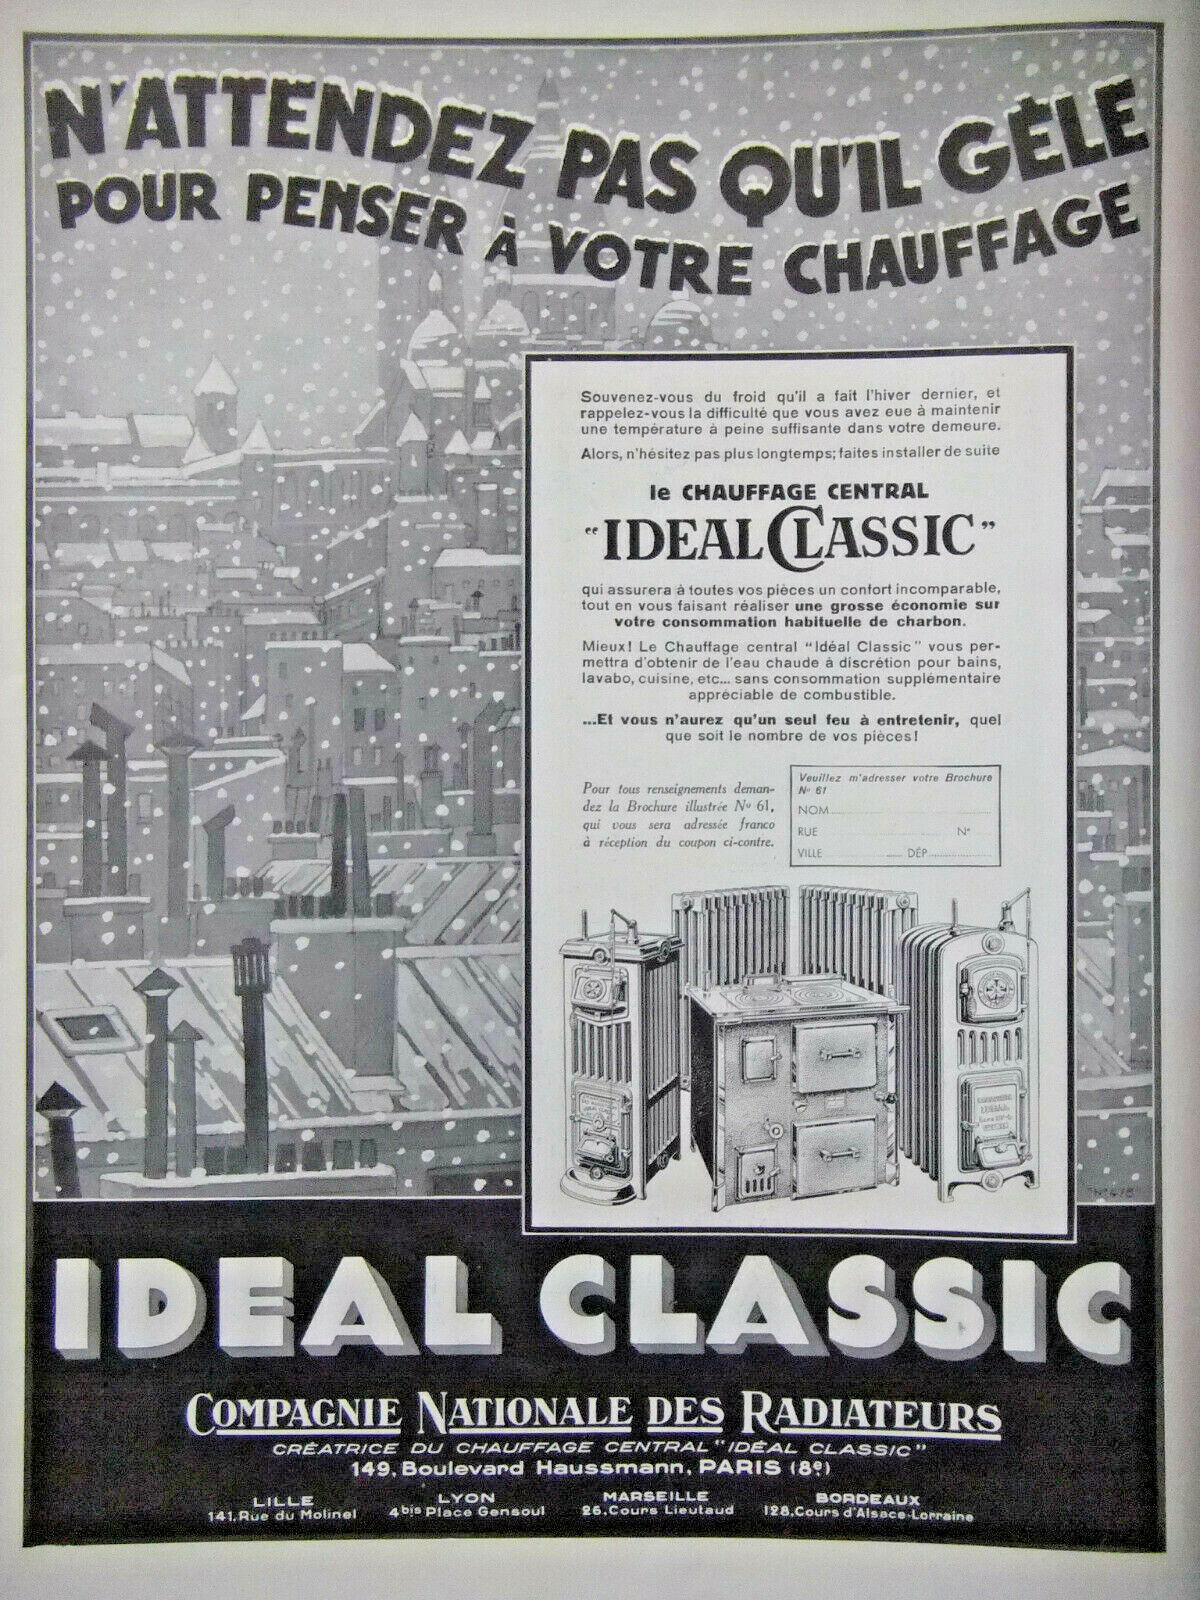 ADS PRESS 1933 IDEAL CLASSIC Cie NATIONALE RADIATEUR - PUBLICITÉ PRESSE FRENCH